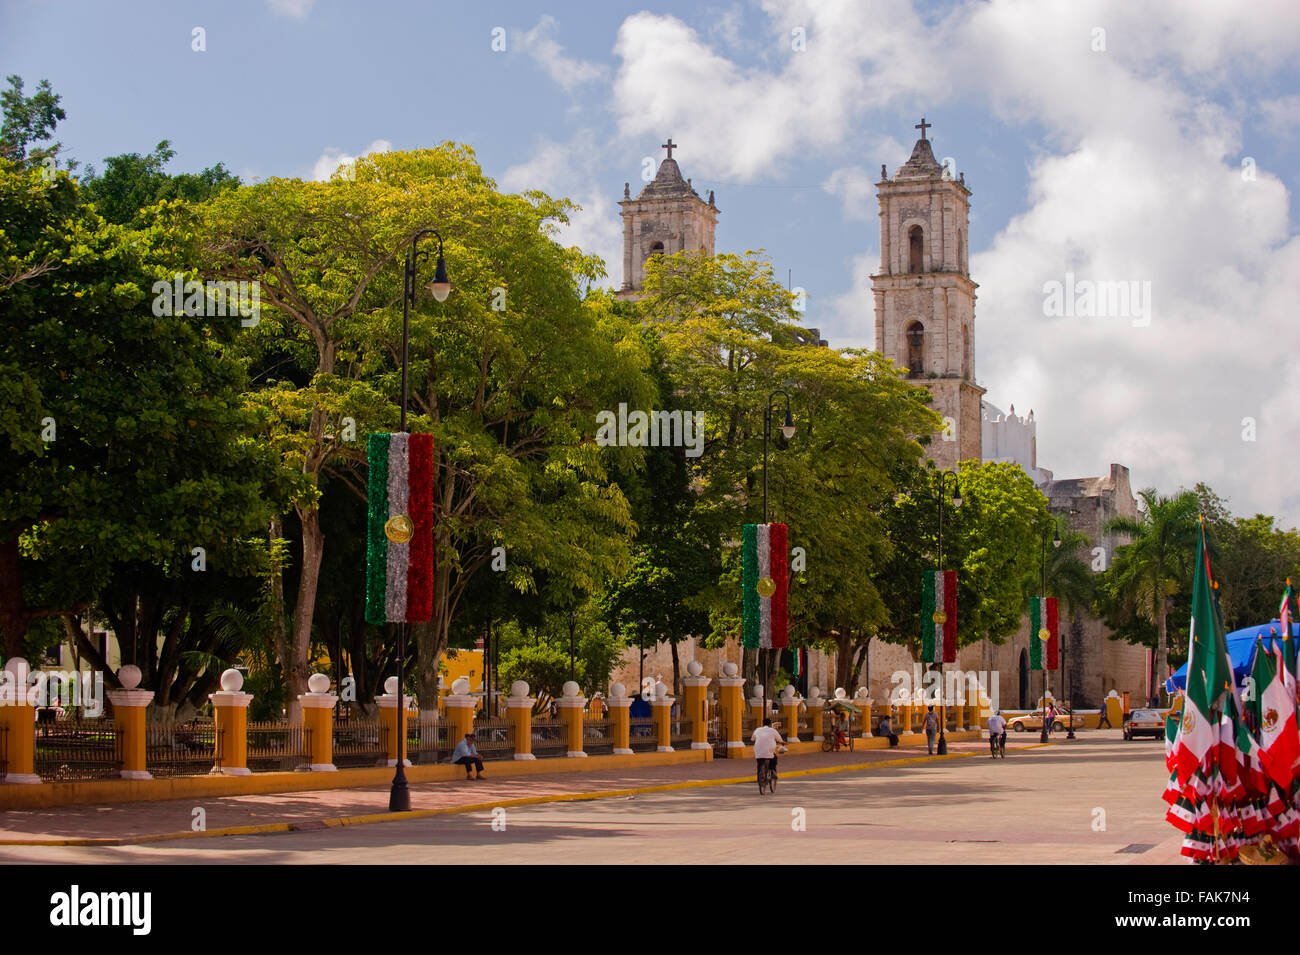 La catedral (catedral) y el parque (parque) de Valladolid, México Foto de stock